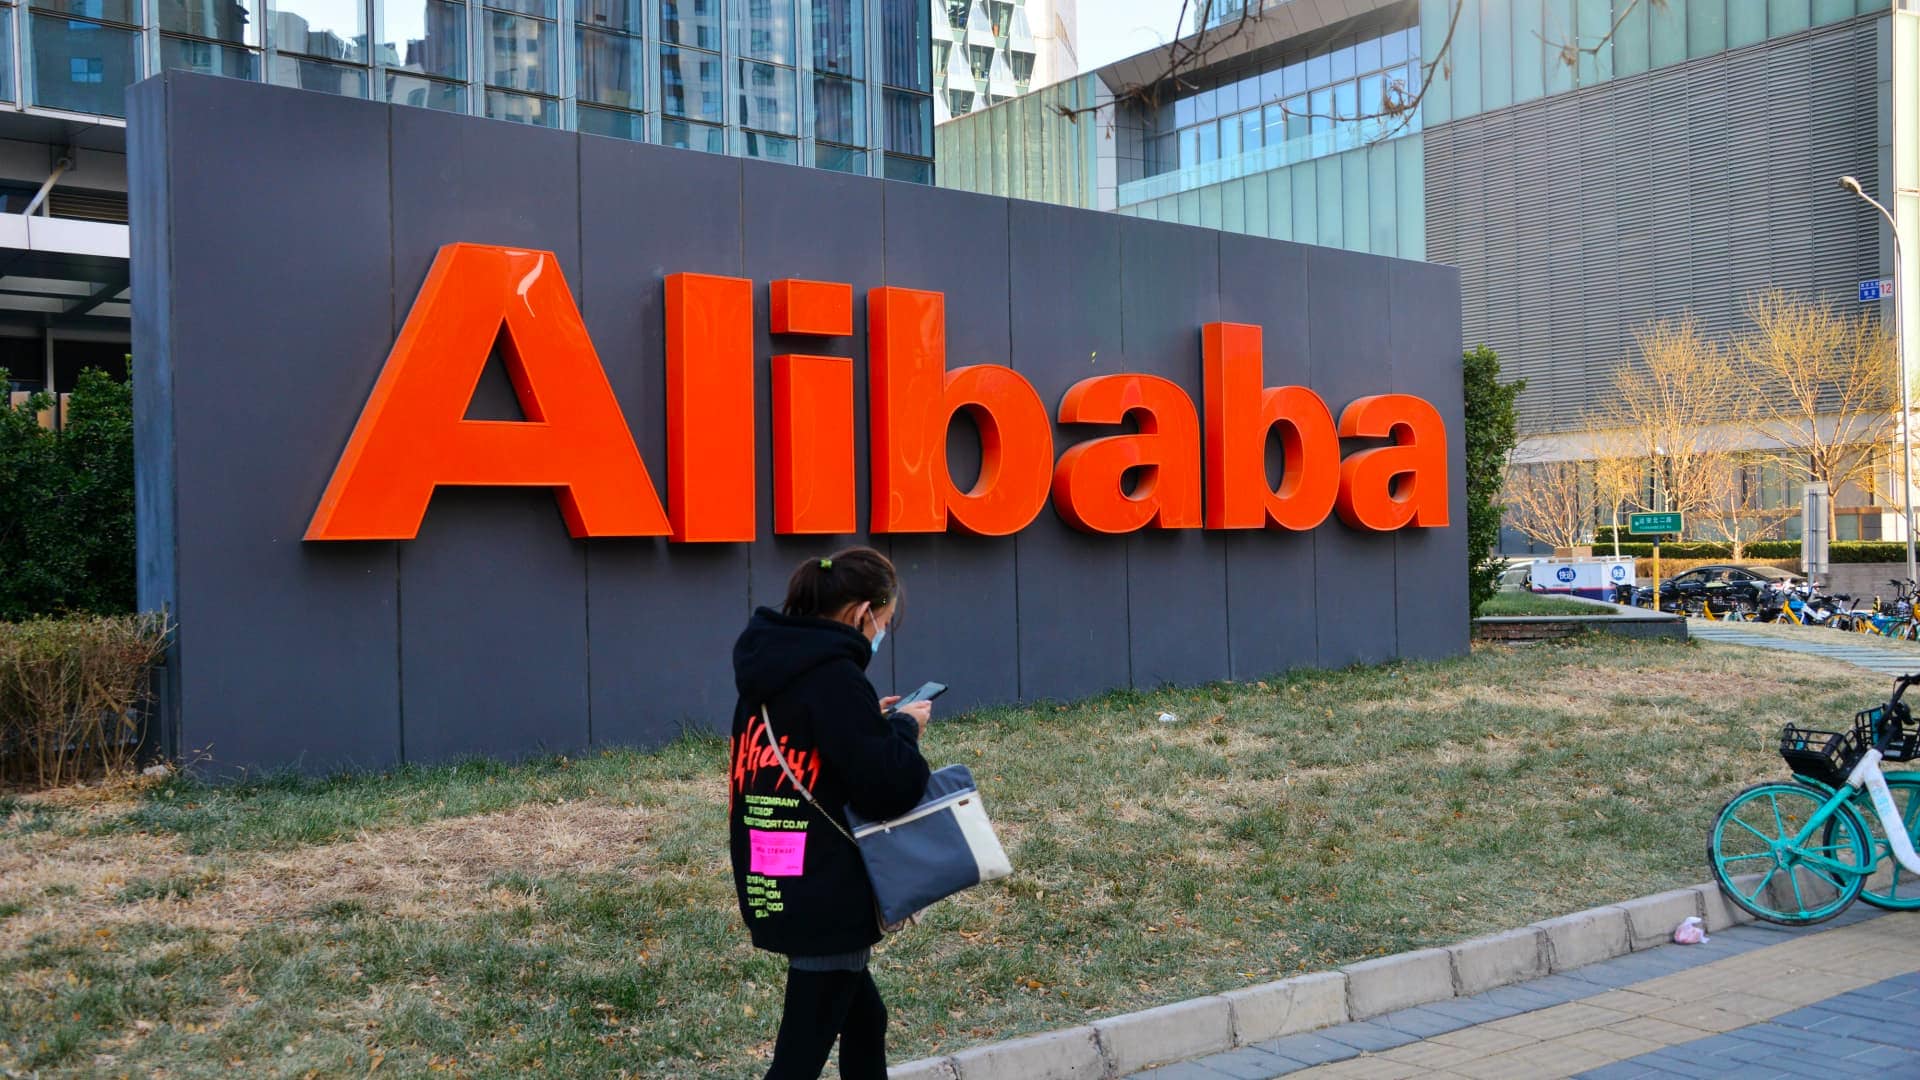 شرکت های بزرگ فناوری چین مانند TenCent، Alibaba در پی سقوط املاک و مستغلات در حال خرید املاک زیادی هستند.